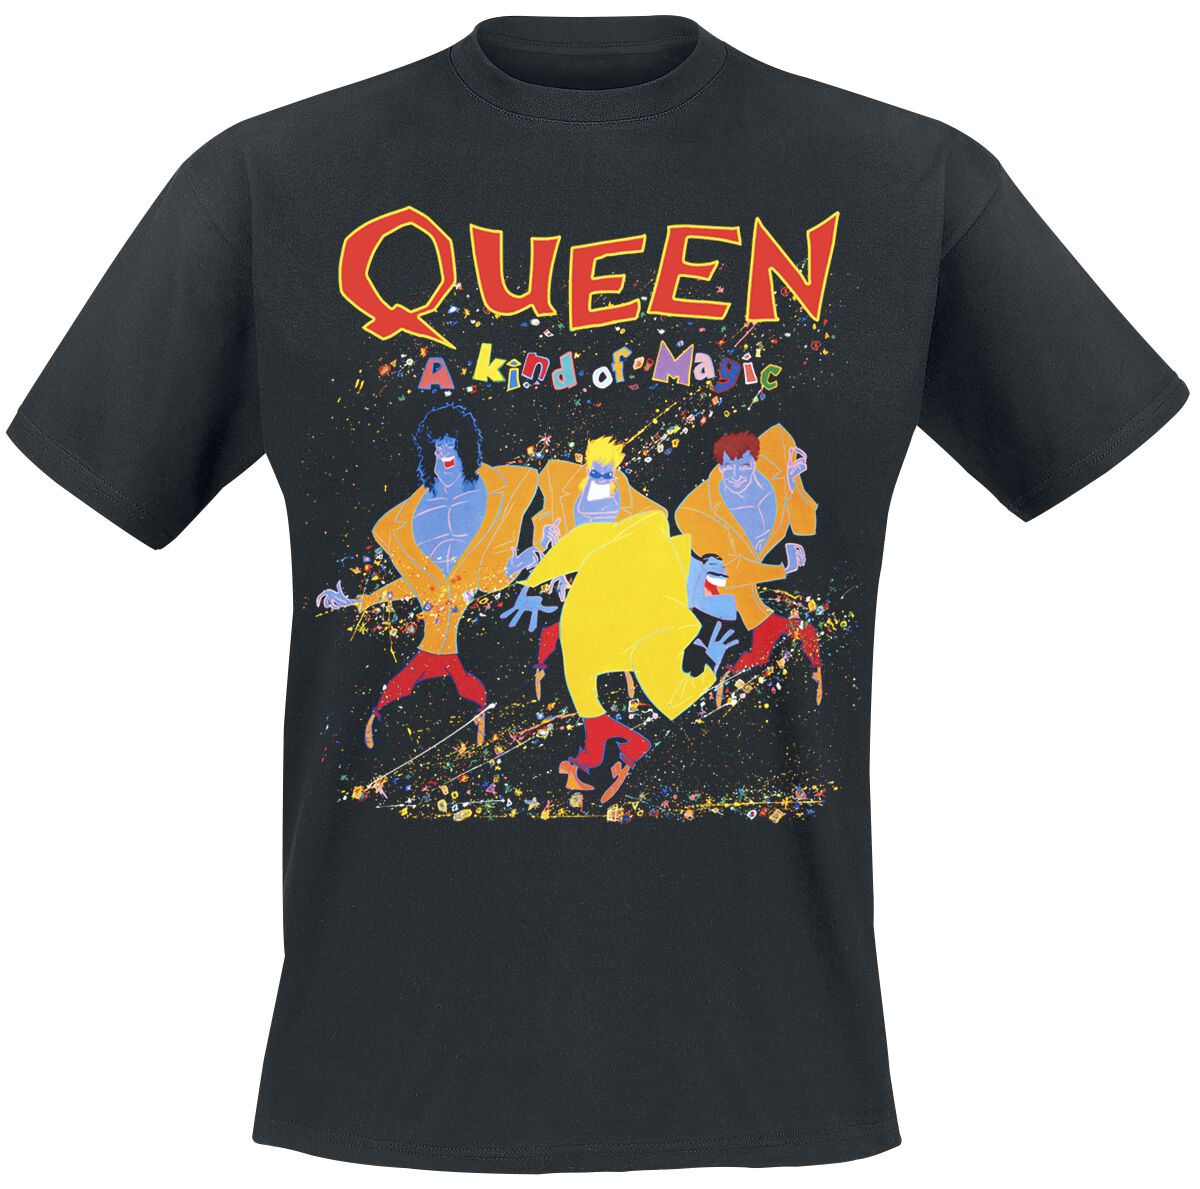 Queen T-Shirt - A Kind Of Magic - S bis 5XL - für Männer - Größe L - schwarz  - Lizenziertes Merchandise!